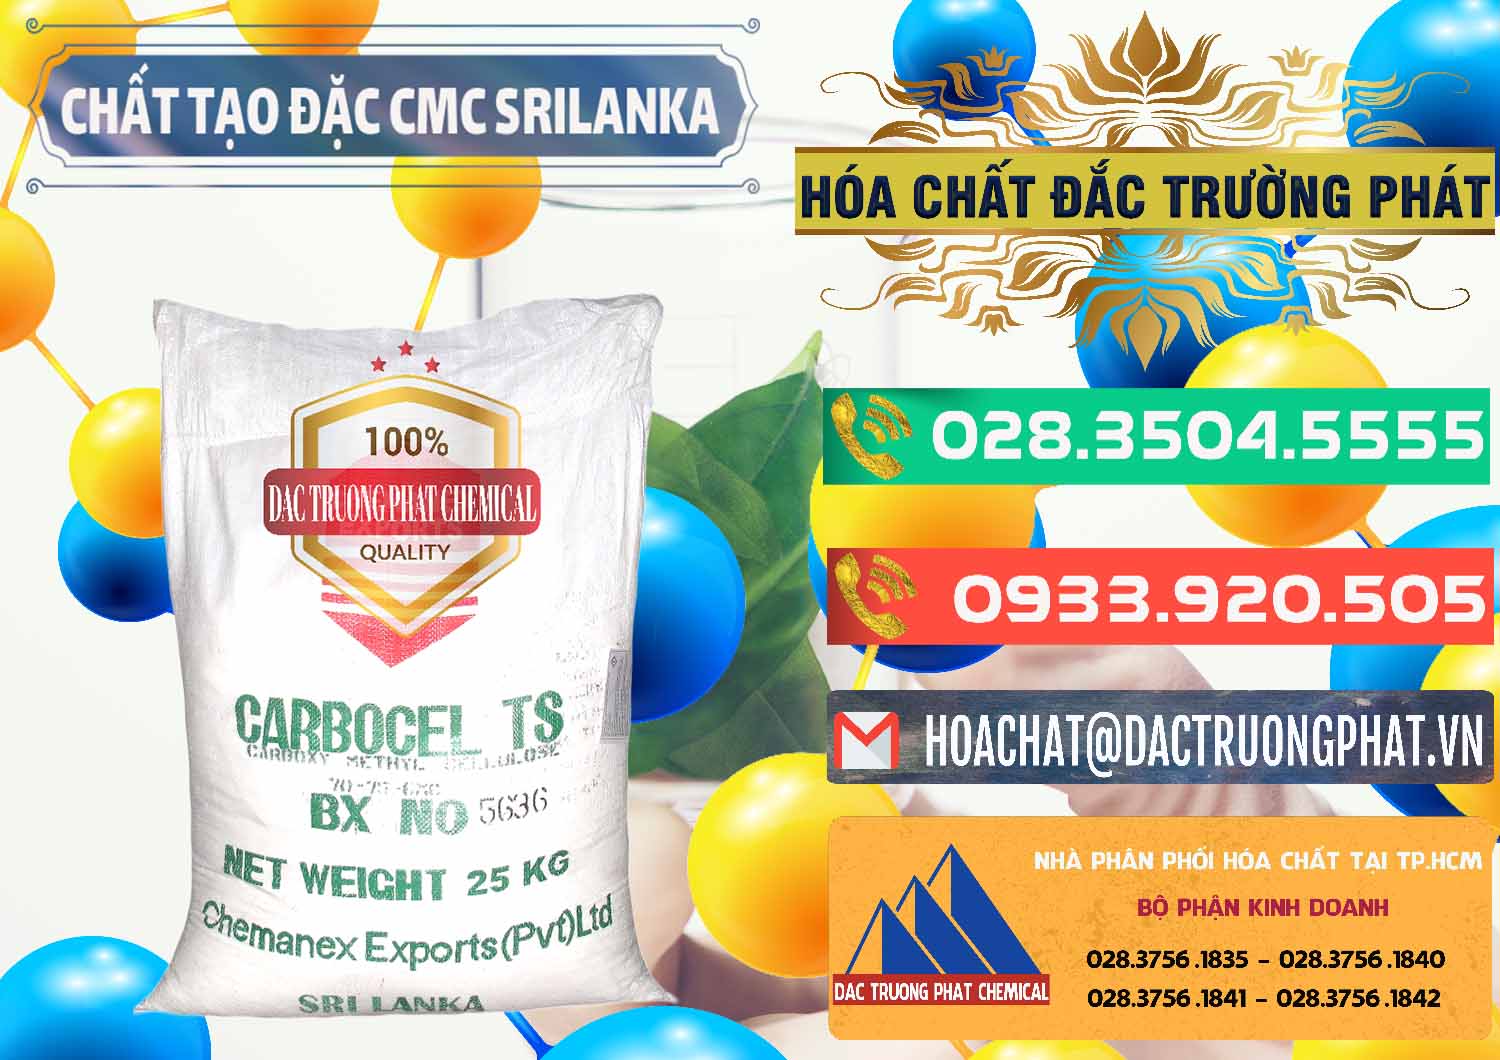 Cty chuyên bán & cung cấp Chất Tạo Đặc CMC - Carboxyl Methyl Cellulose Srilanka - 0045 - Đơn vị chuyên bán & cung cấp hóa chất tại TP.HCM - congtyhoachat.com.vn